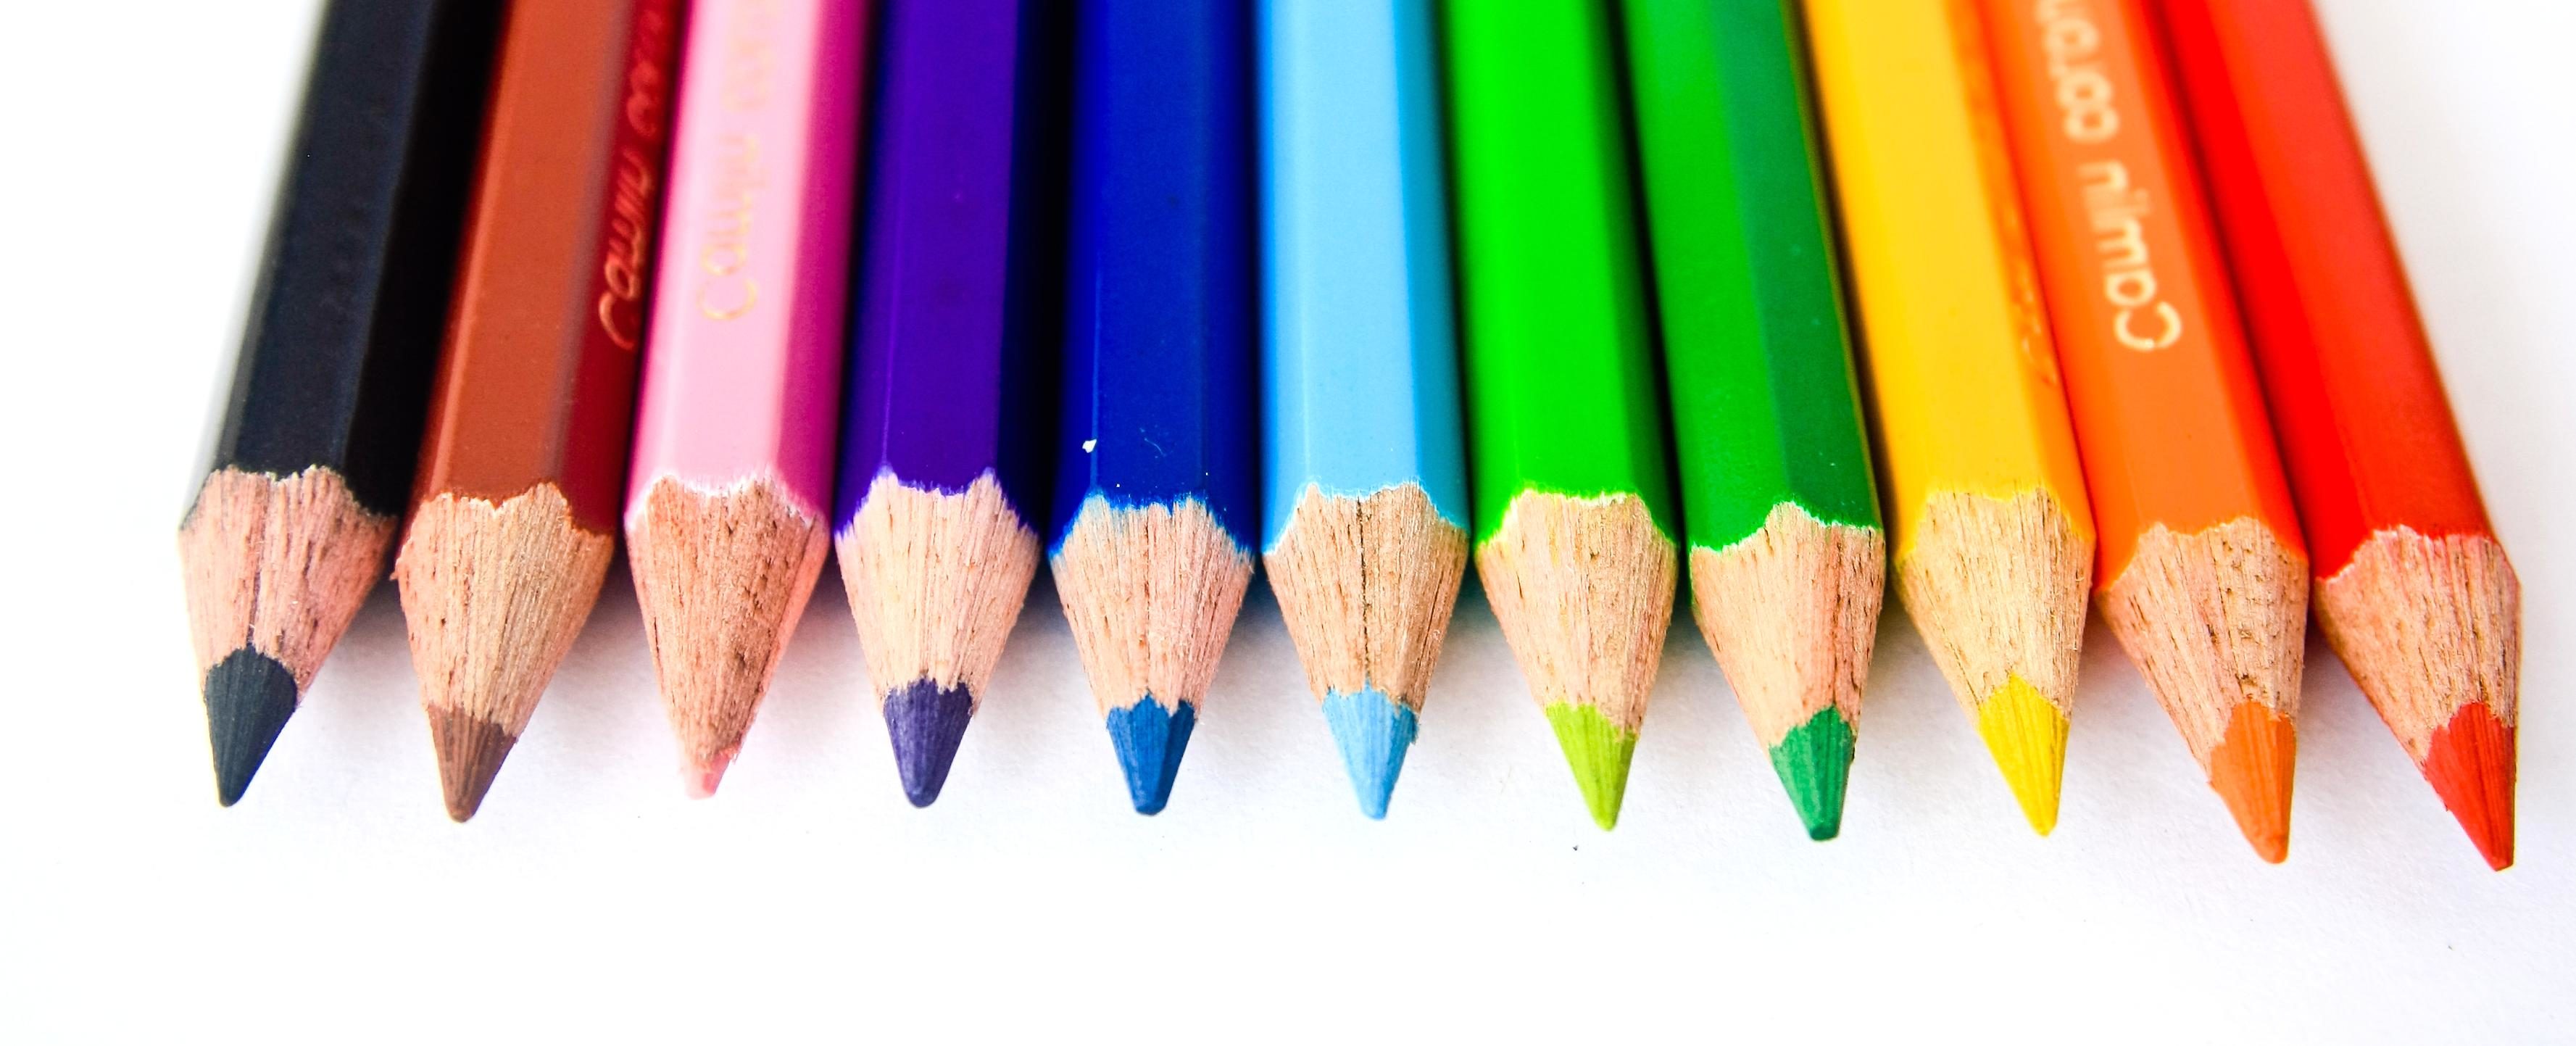 Foto gratis: Colore, matita, arcobaleno, pastello, educazione, scuola,  colorito, arcobaleno, arte